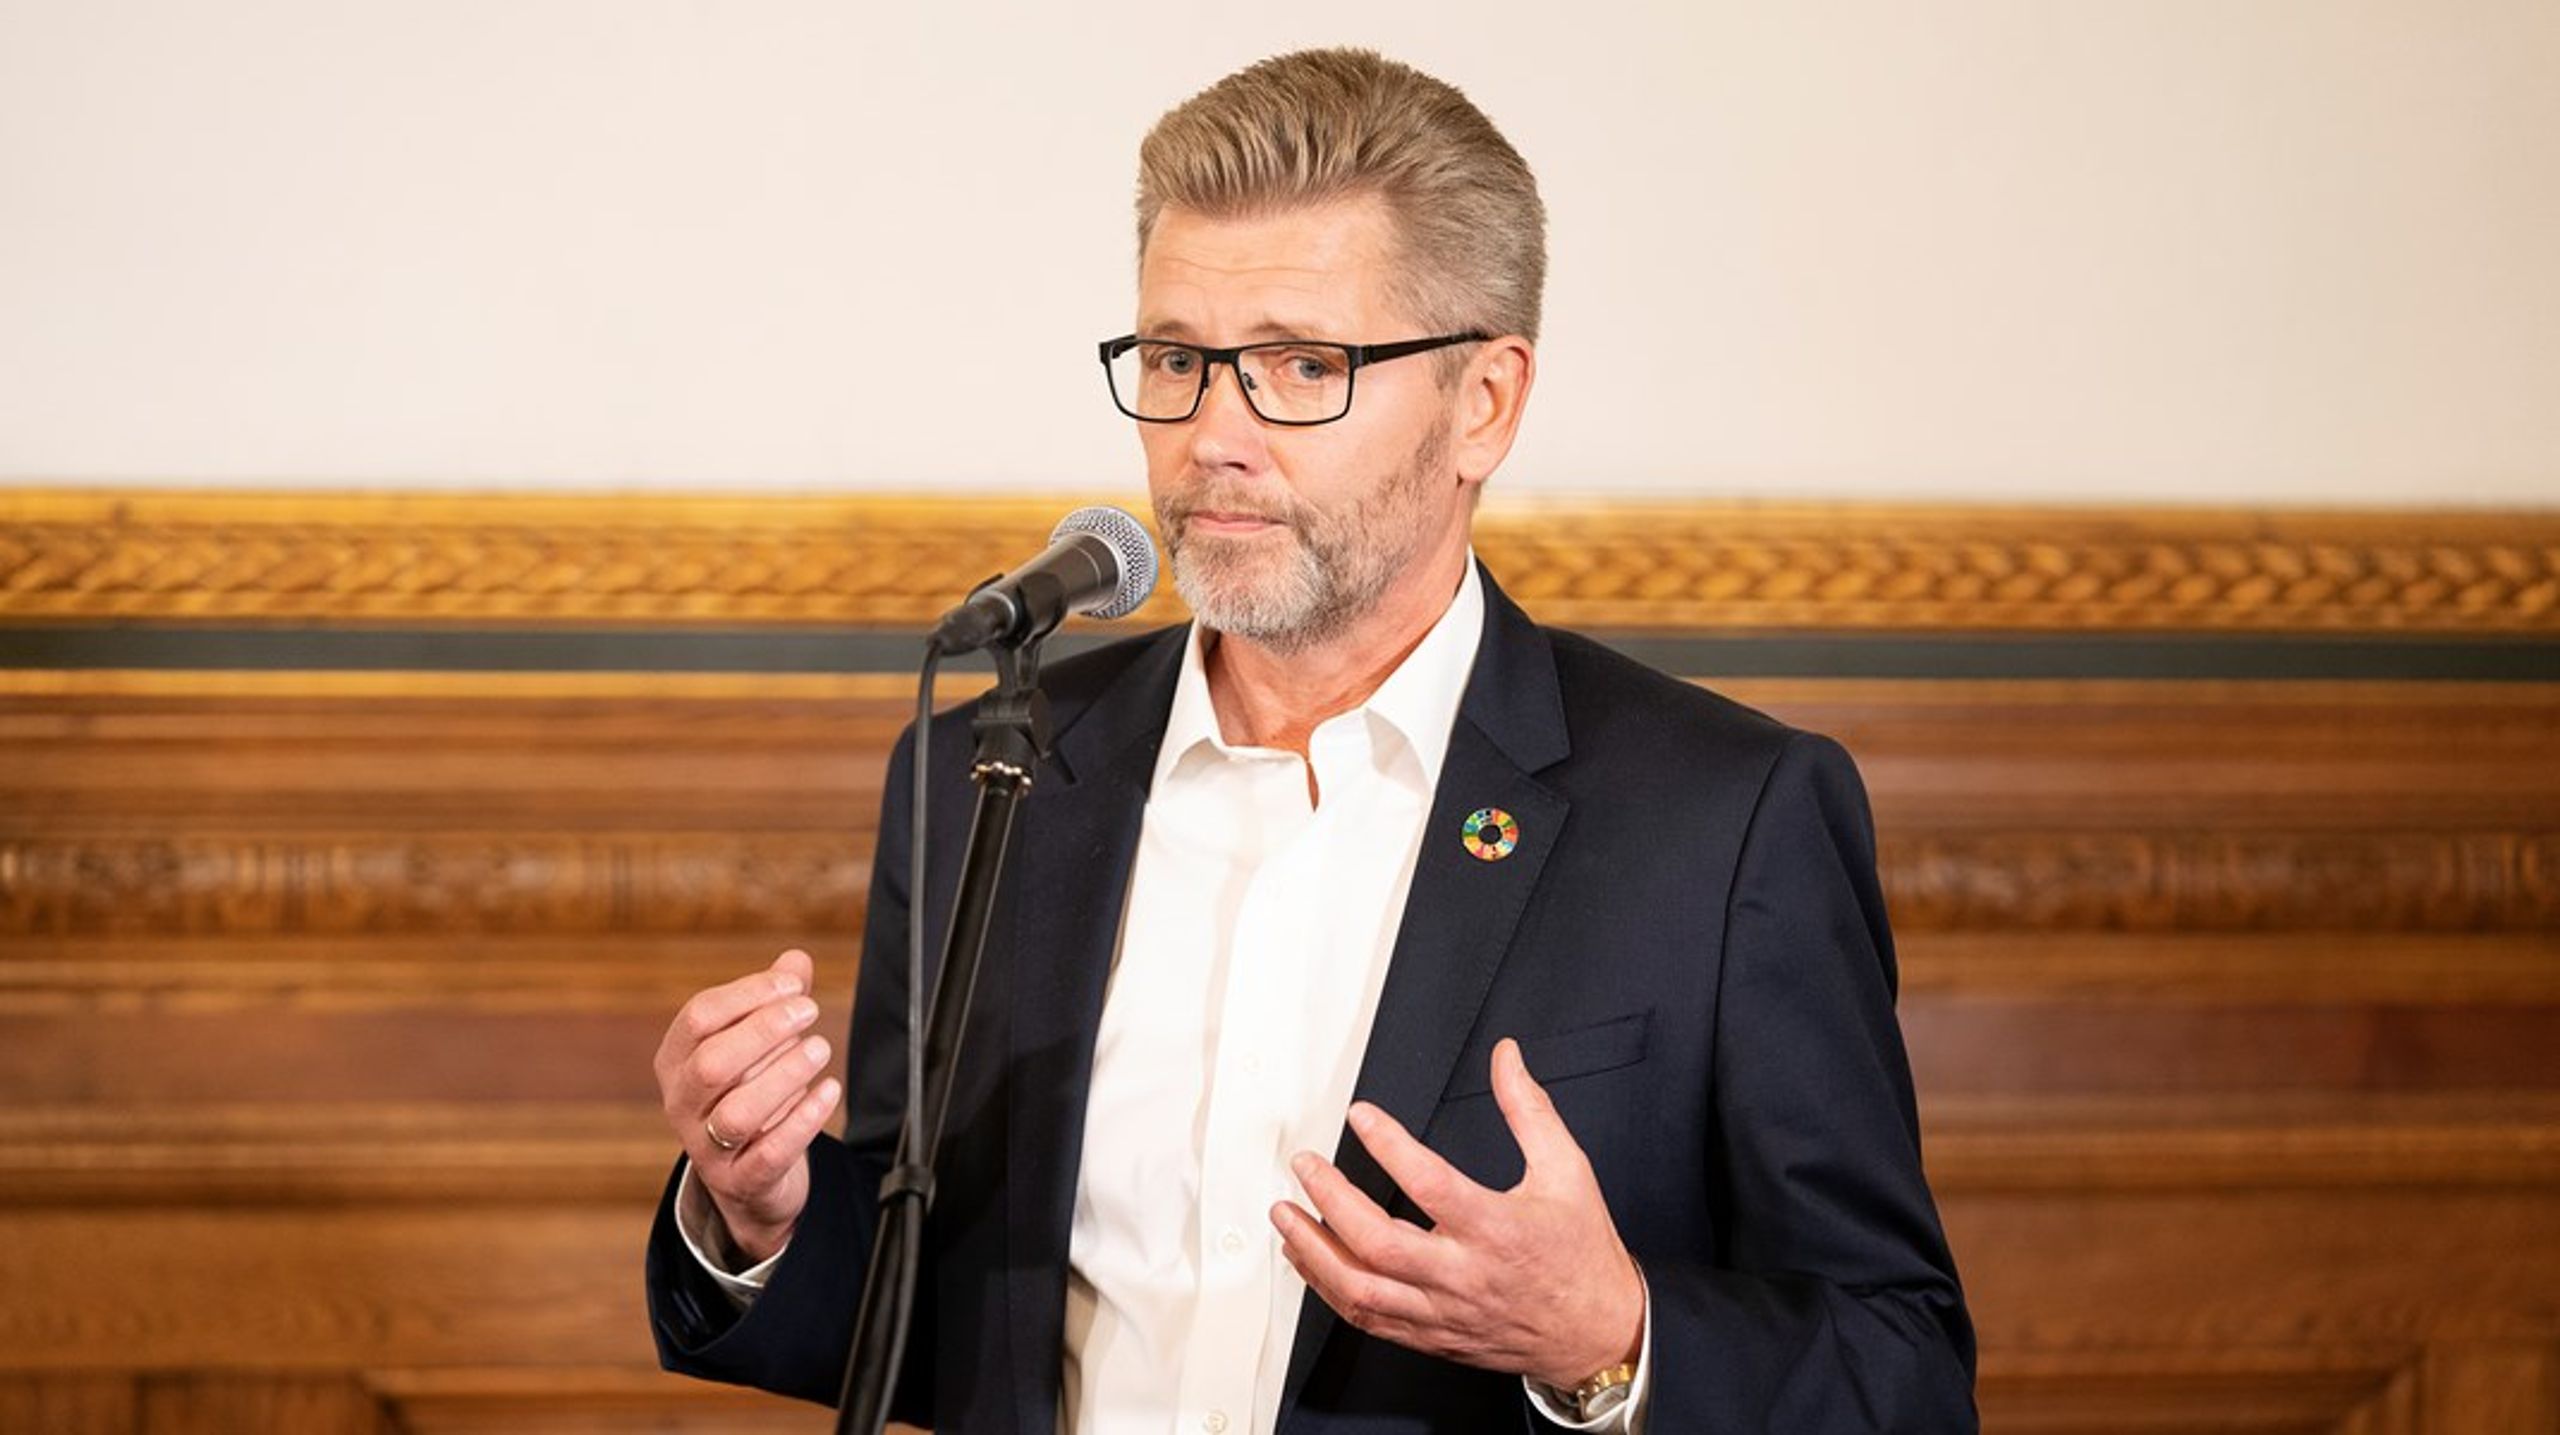 Frank Jensen vinkede i oktober 2020 farvel til livet i politik, efter han var beskyldt for at have begået seksuelle krænkelser i flere sager.